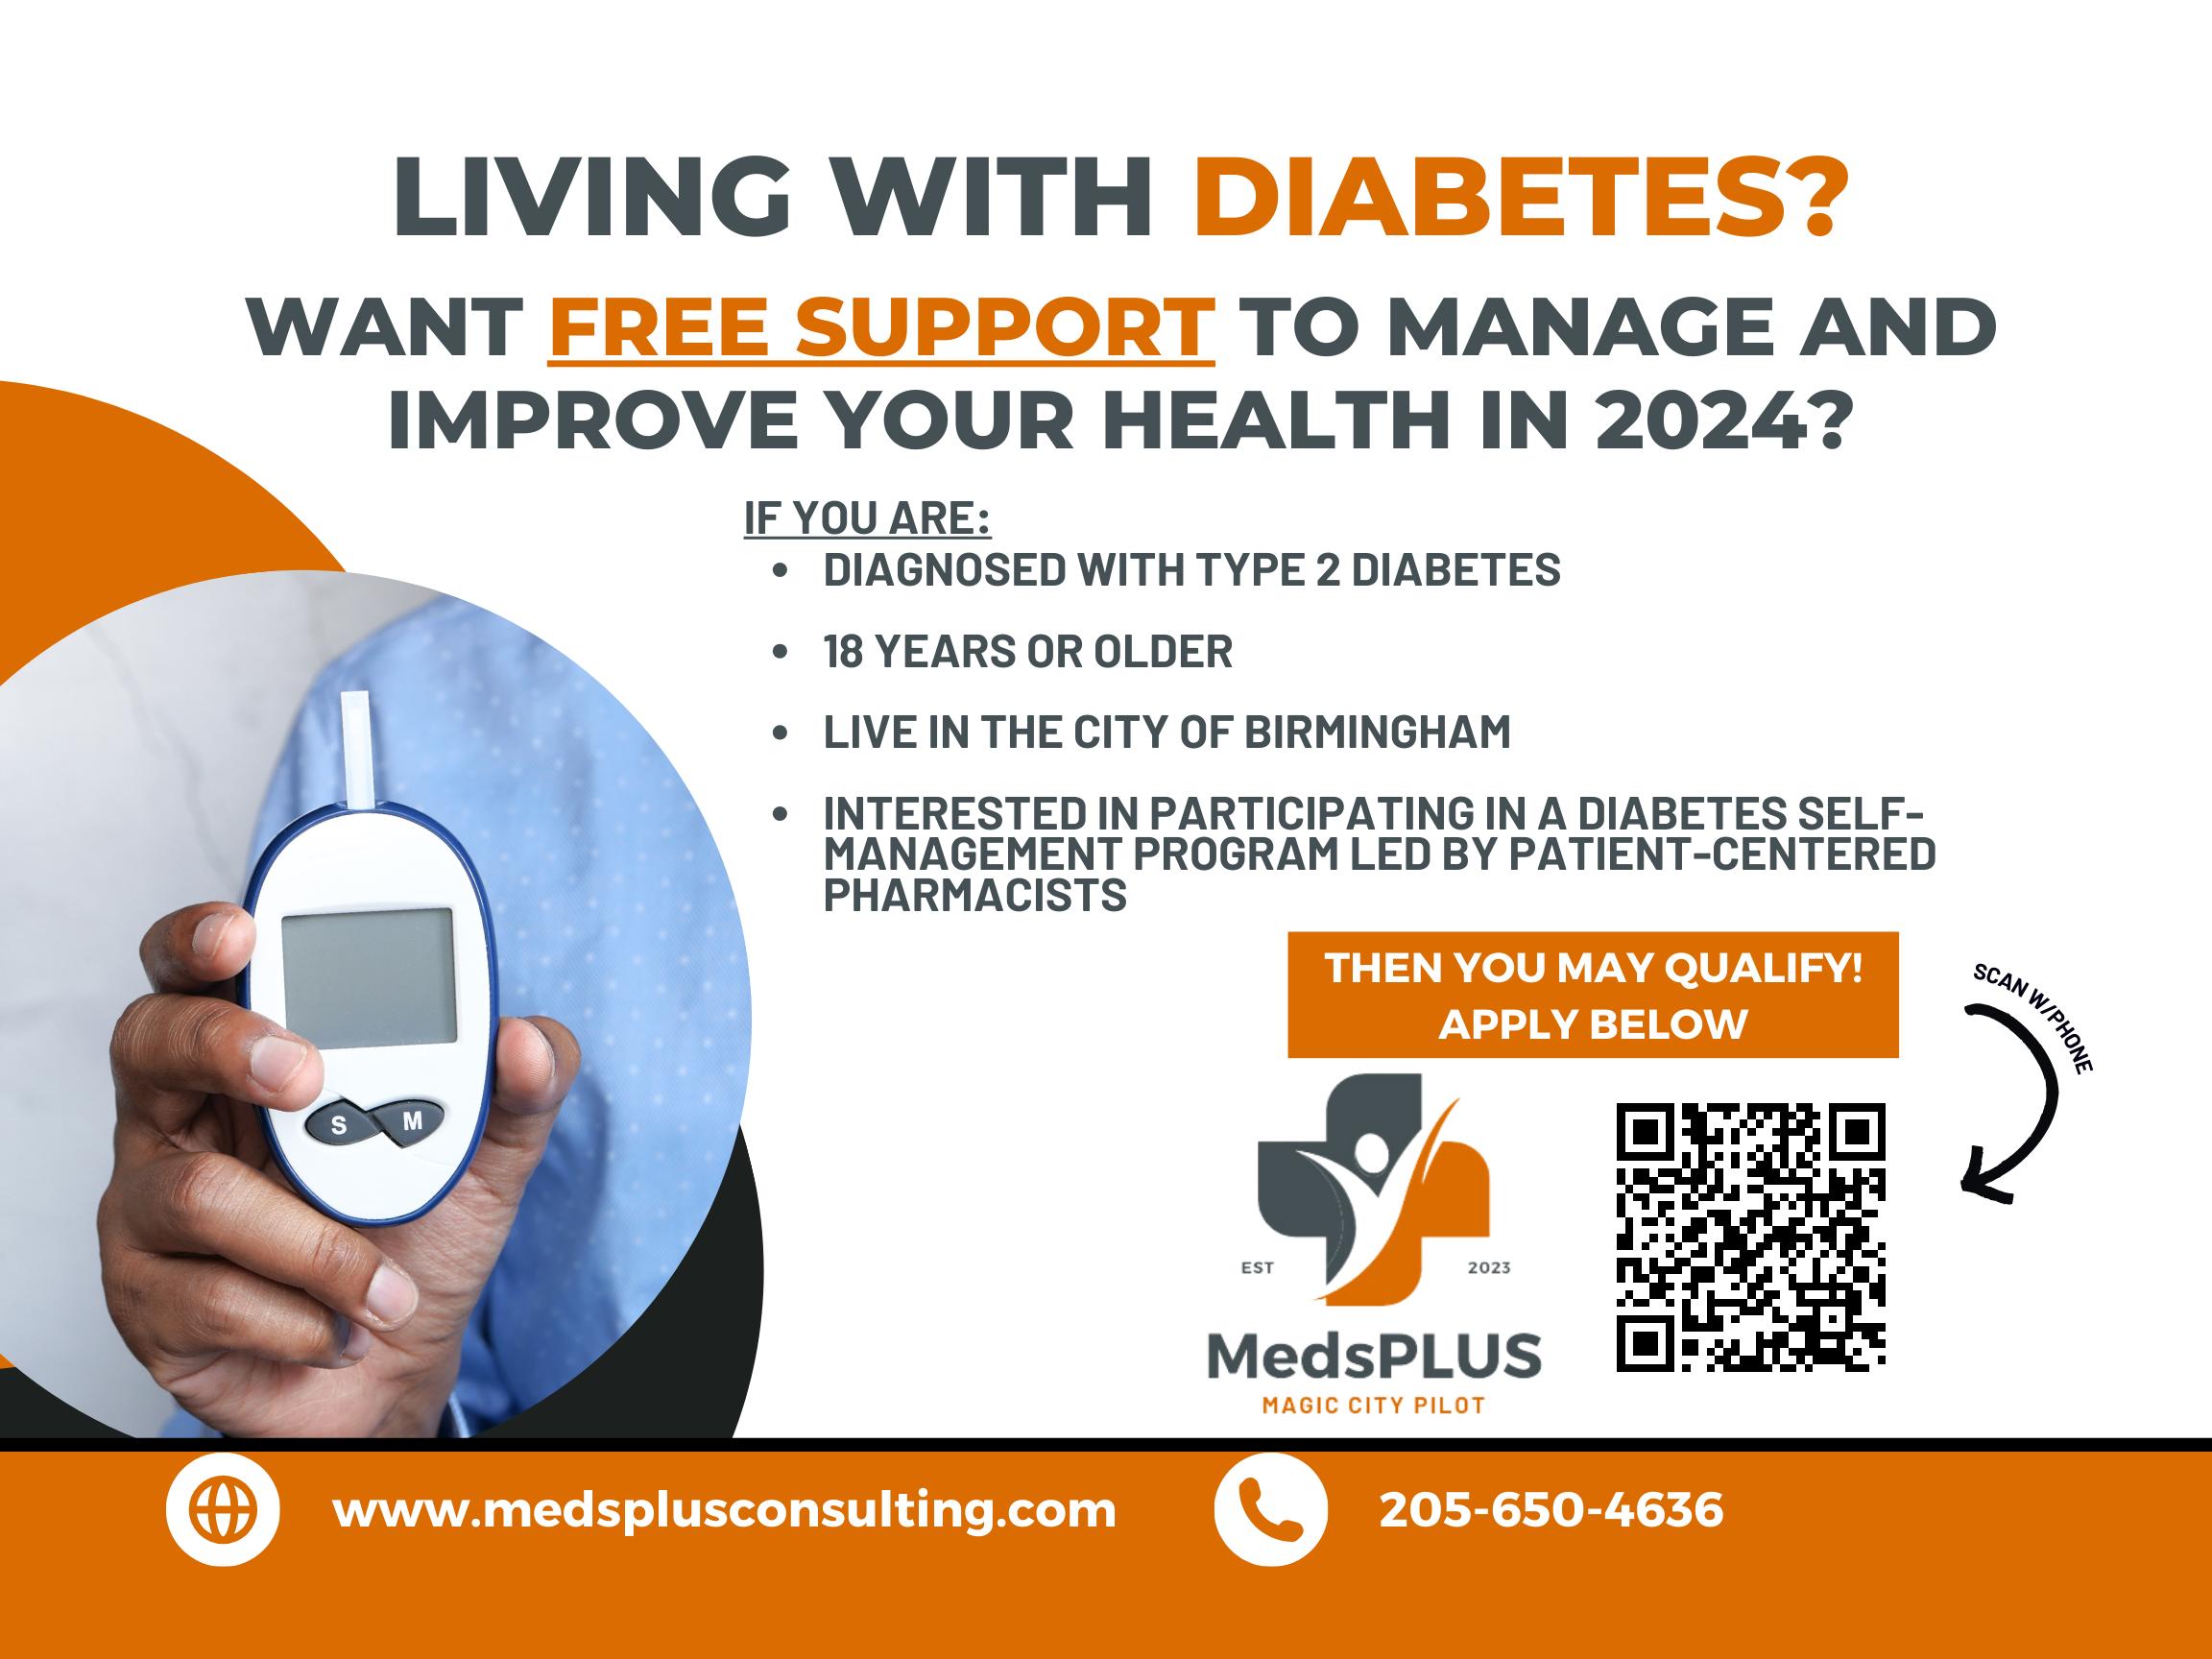 MedsPLUS Diabetes Education Program